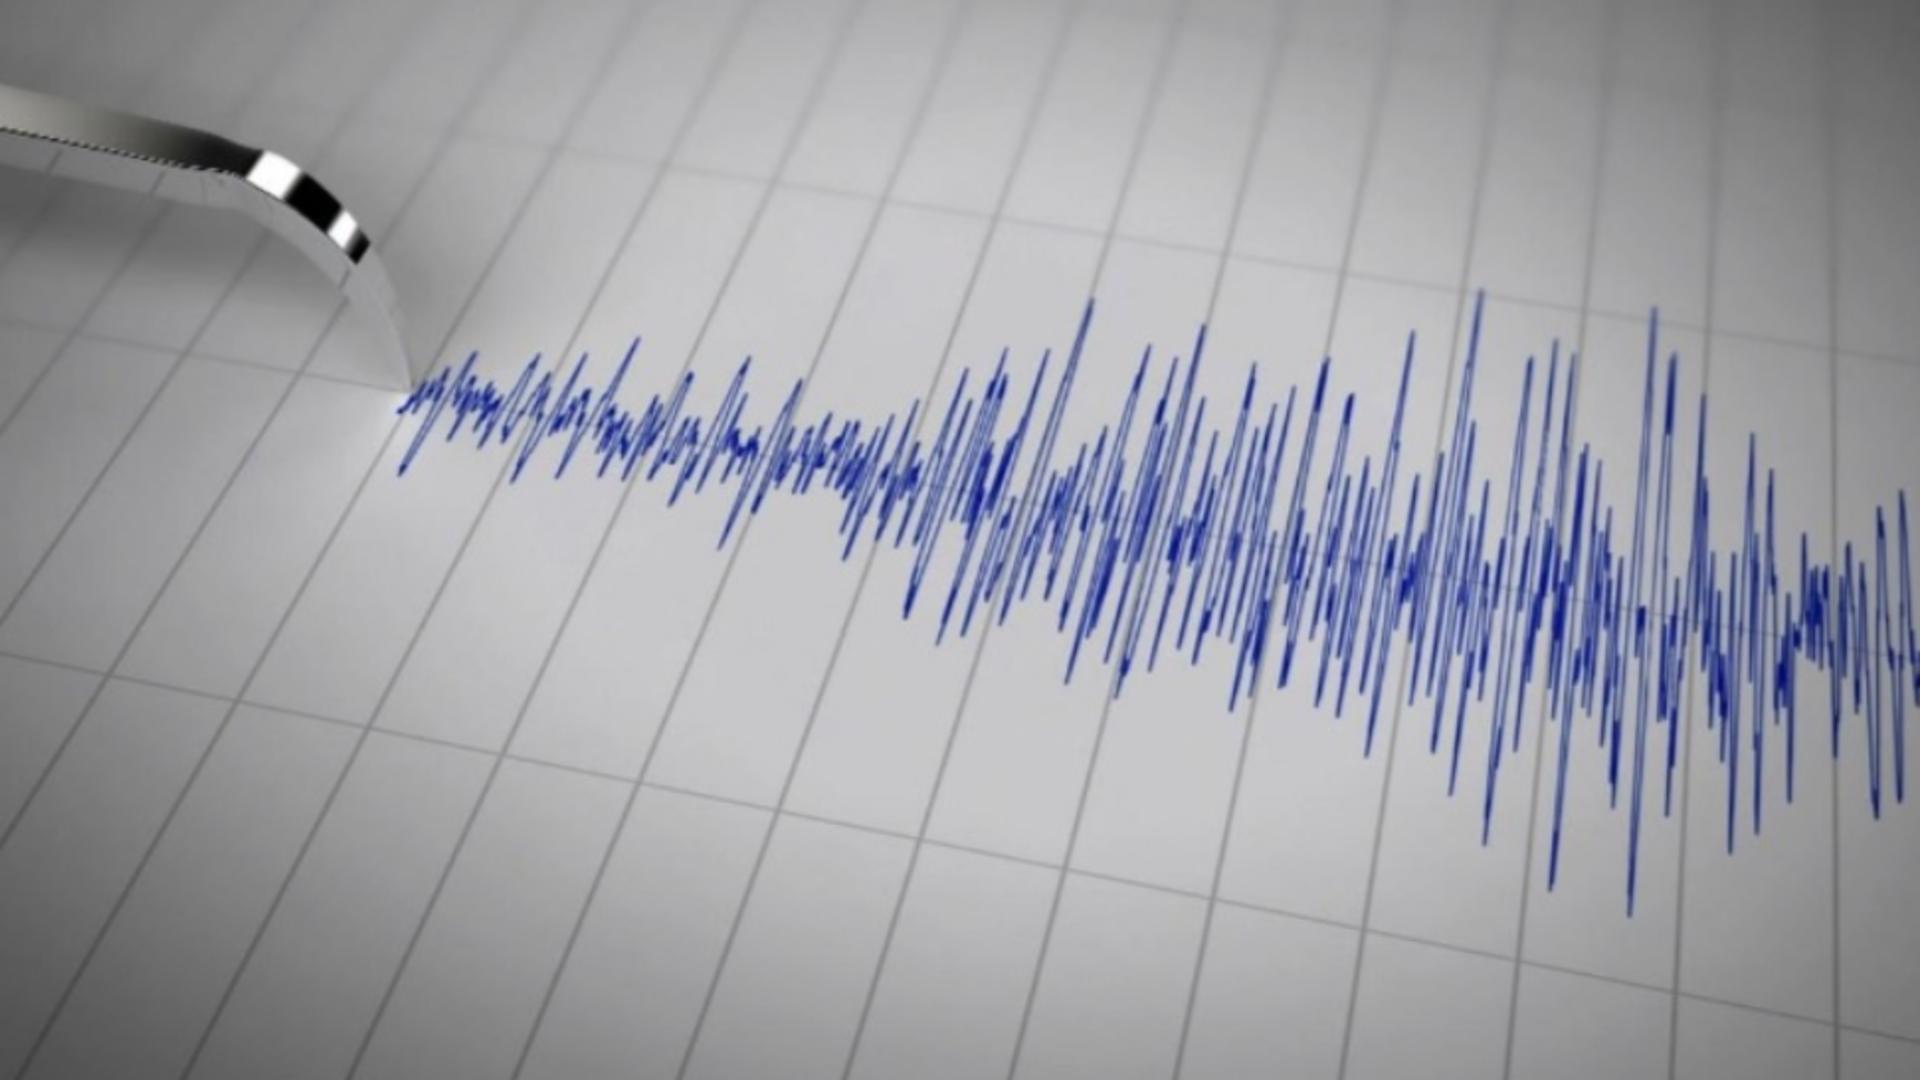 Cutremur de magnitudine însemnată, marți, în România